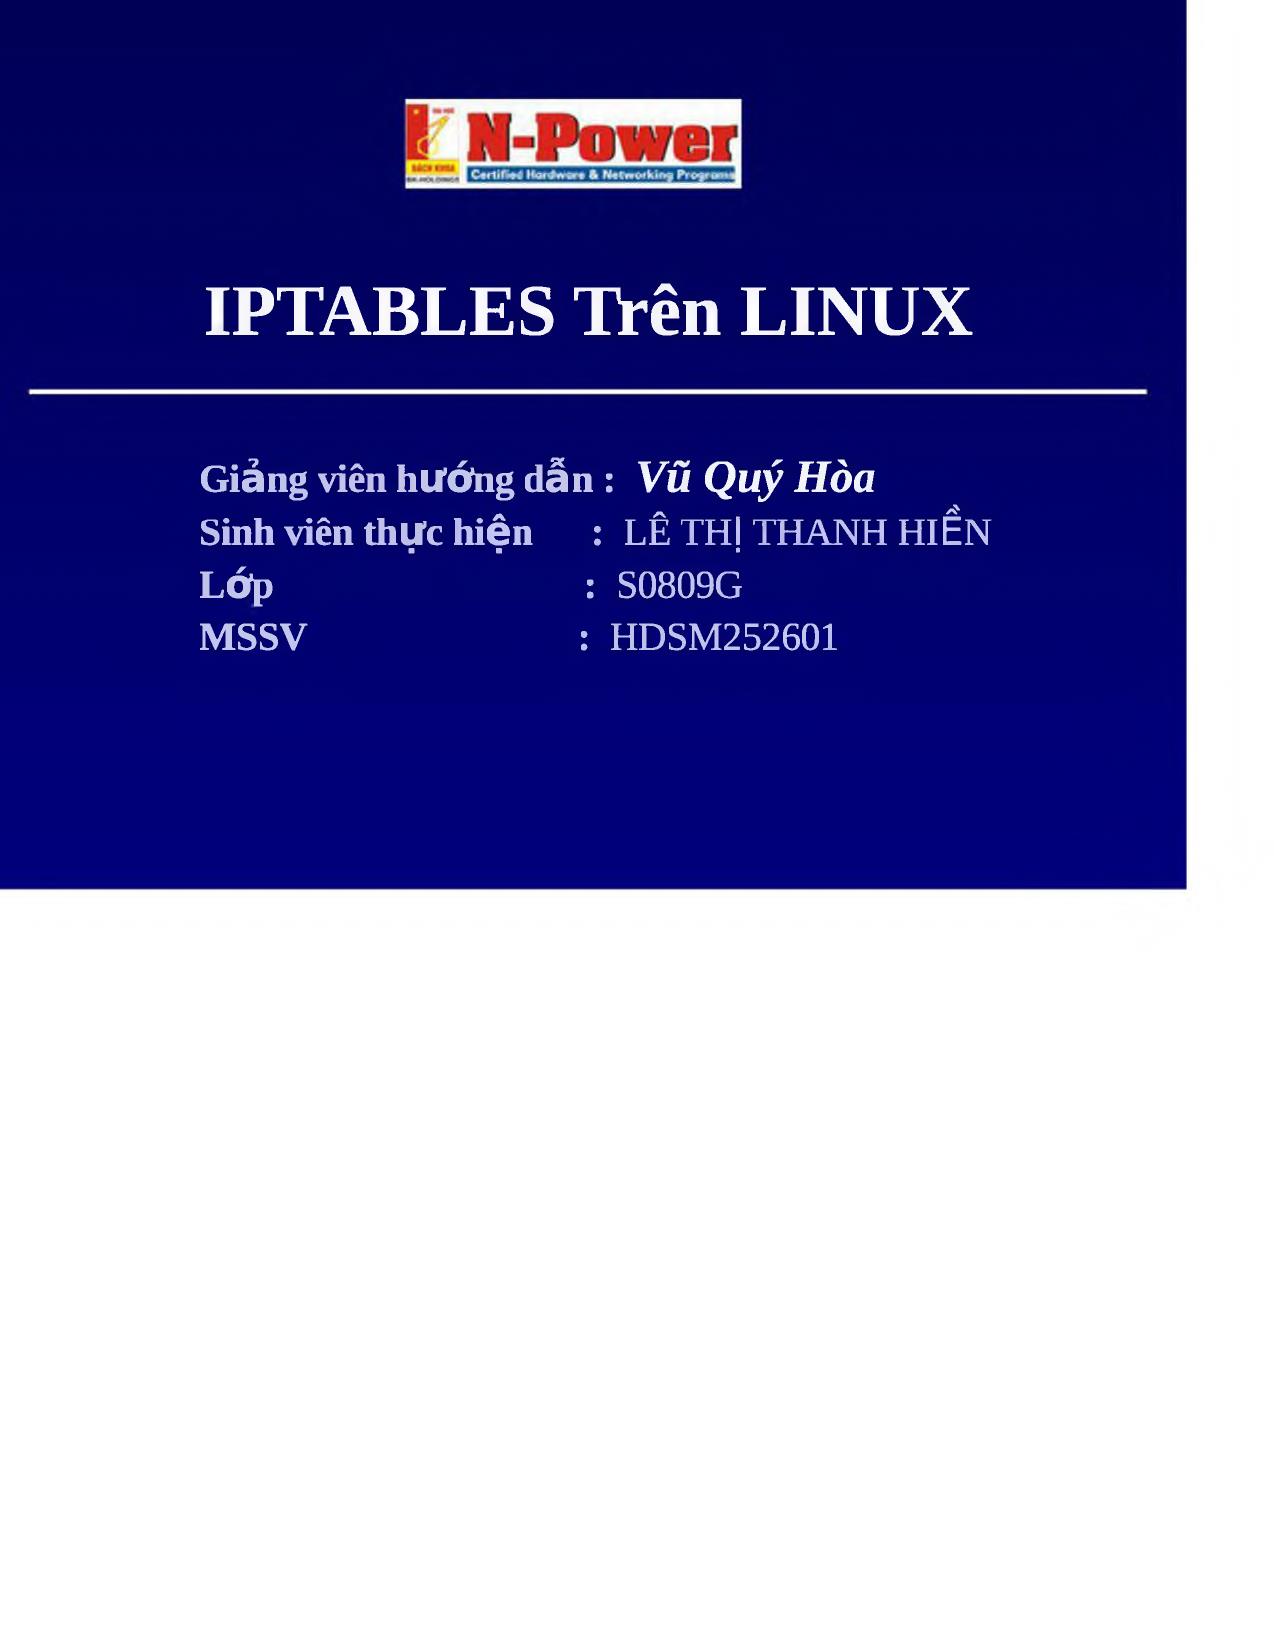 Đề tài IPTables trên Linux trang 1